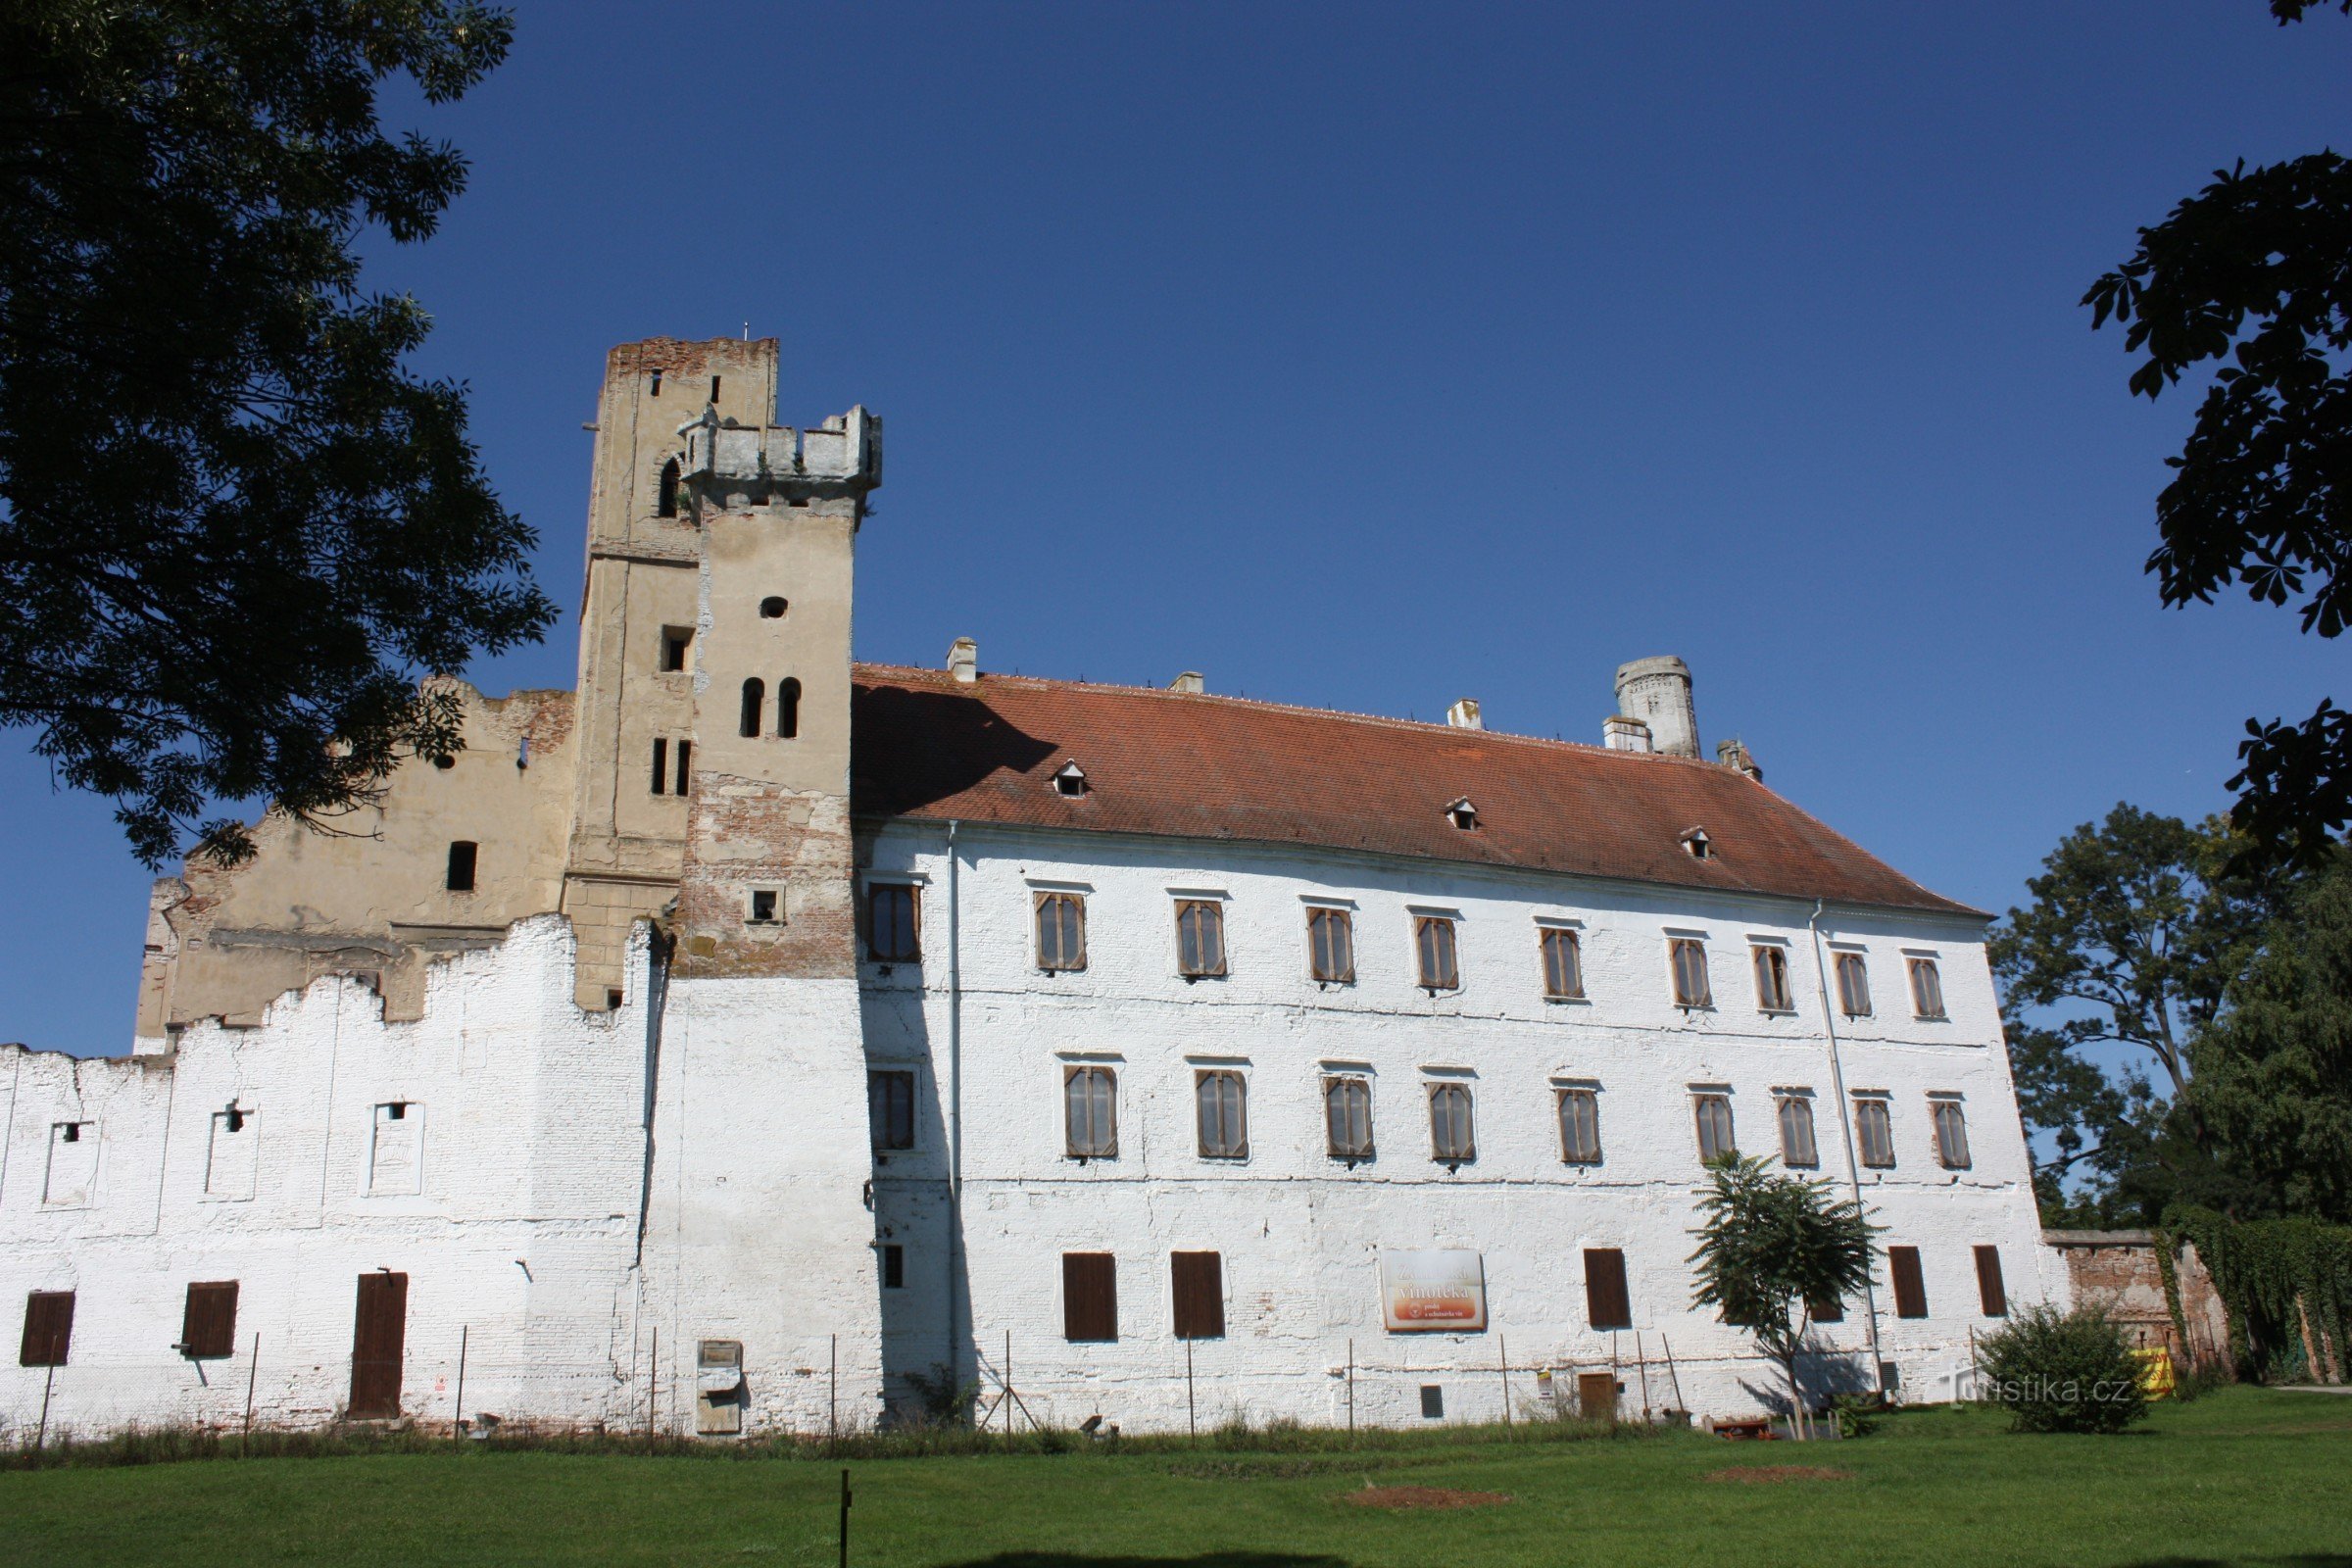 Castelo de Břeclav, originalmente um castelo situado no local de uma colina do século XI